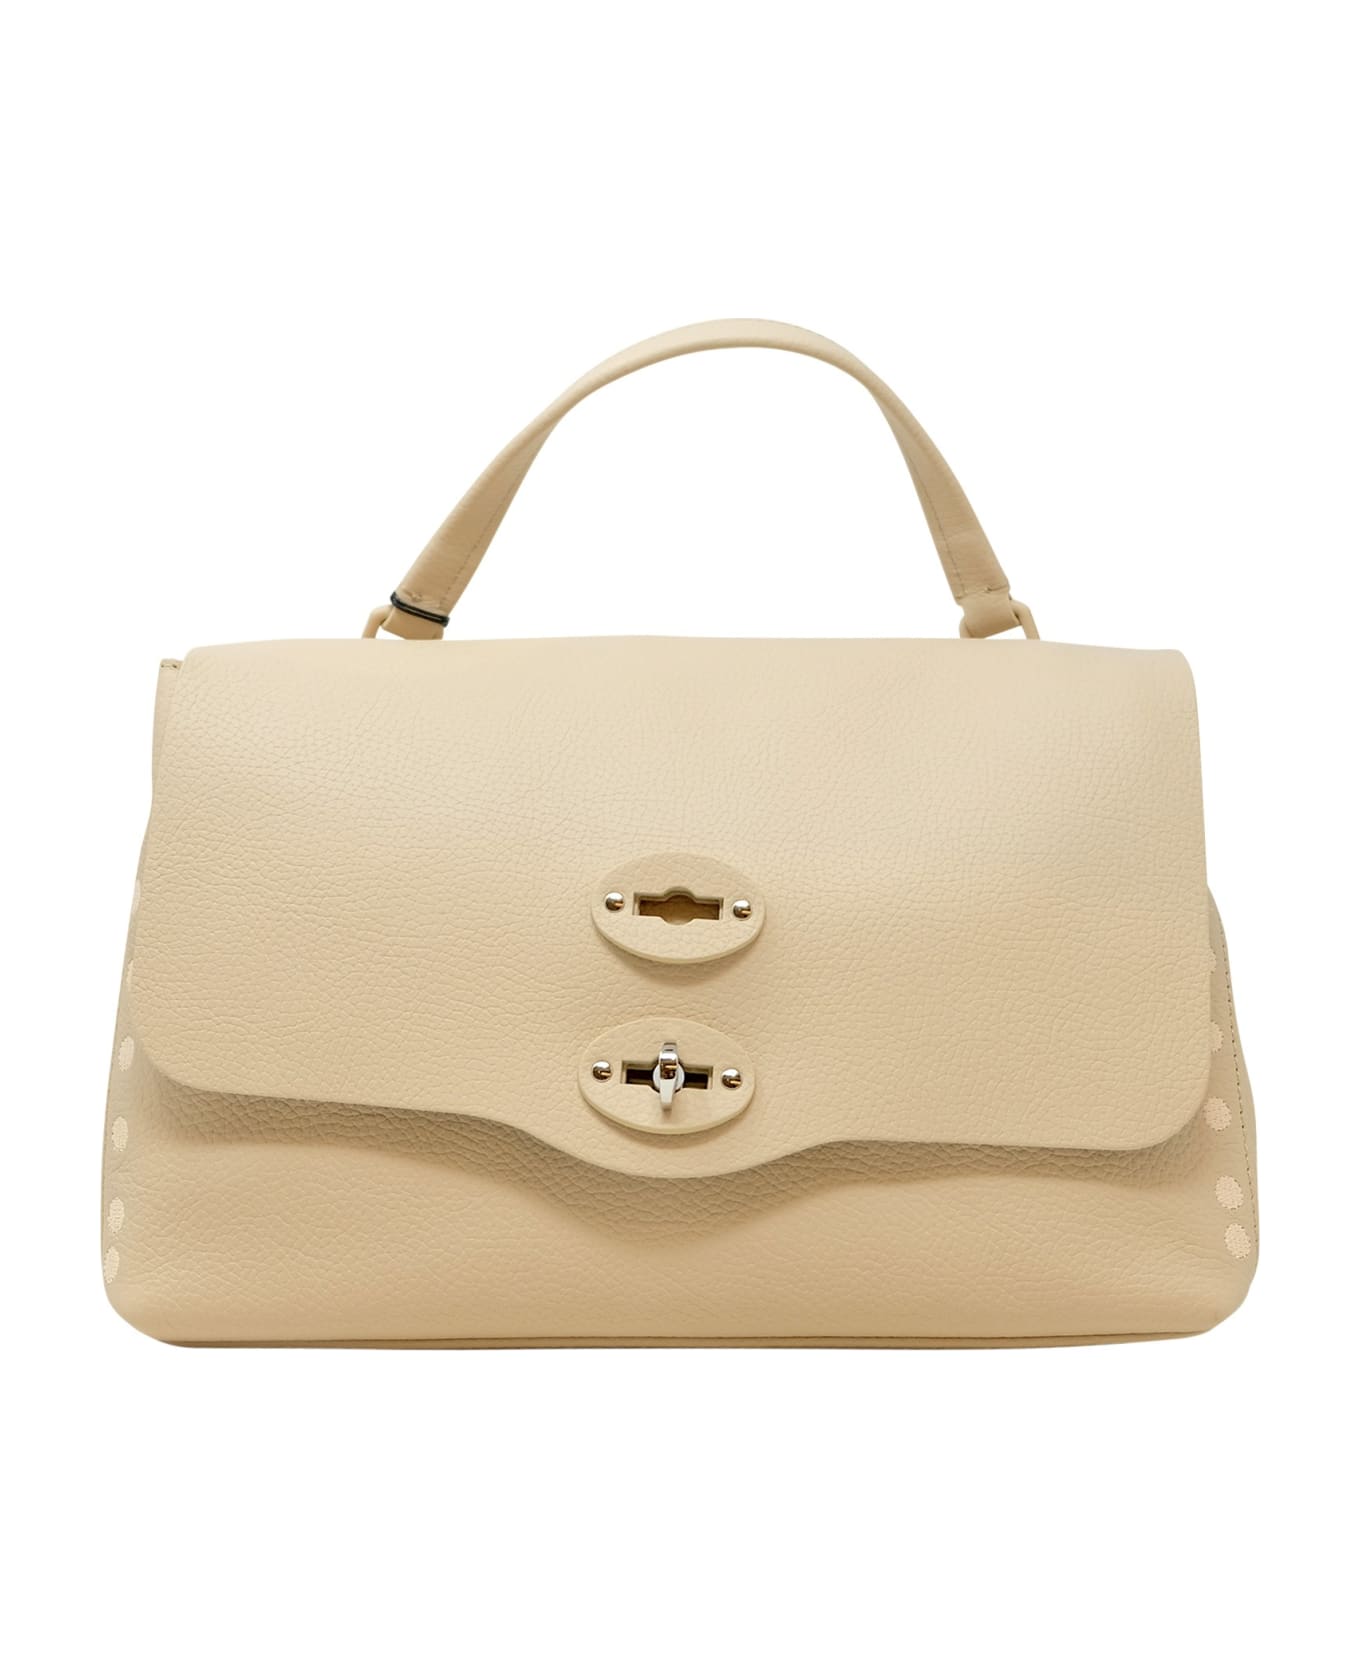 Zanellato 068000-0380000-z0880 Postina Pura 2.0 Luxethic S Rosa Minuet Leather Handbag - CIPRIA